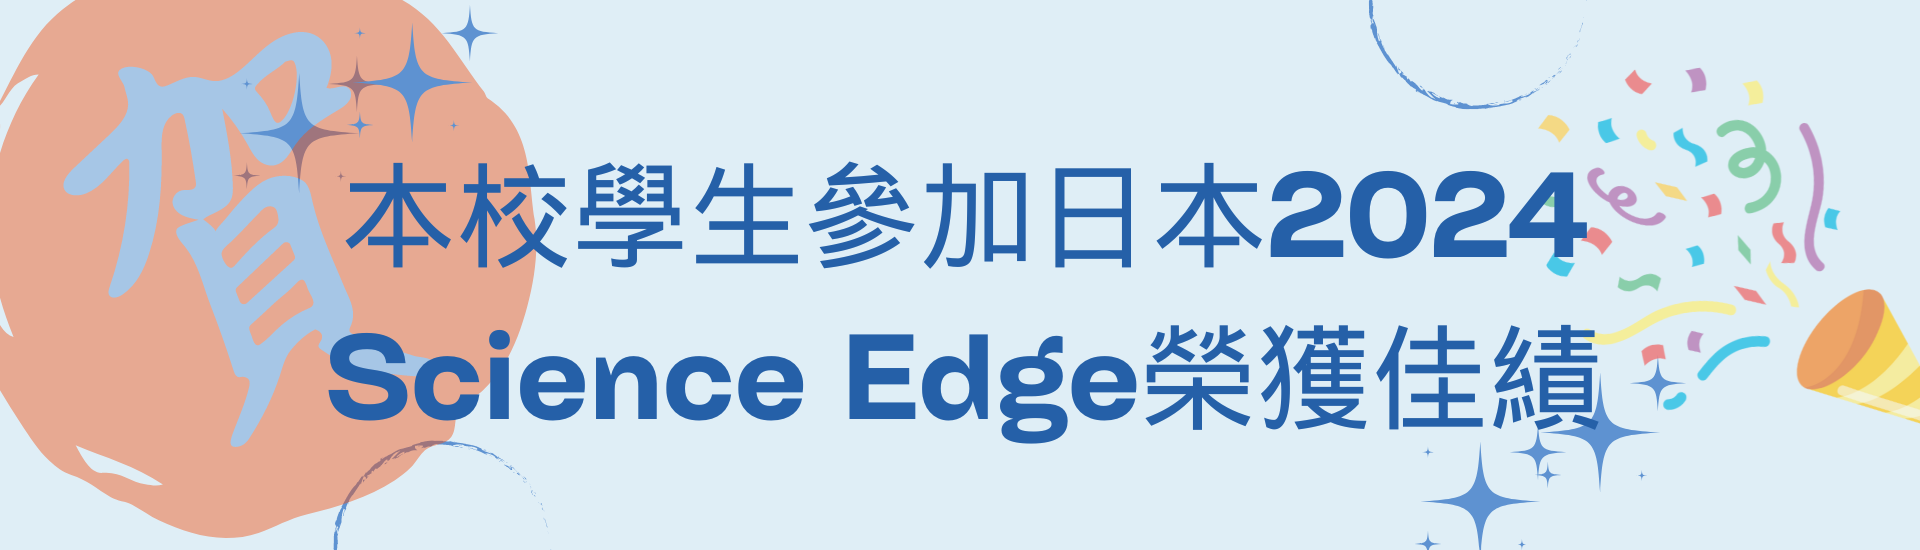 本校學生參加日本2024 Science Edge榮獲佳績